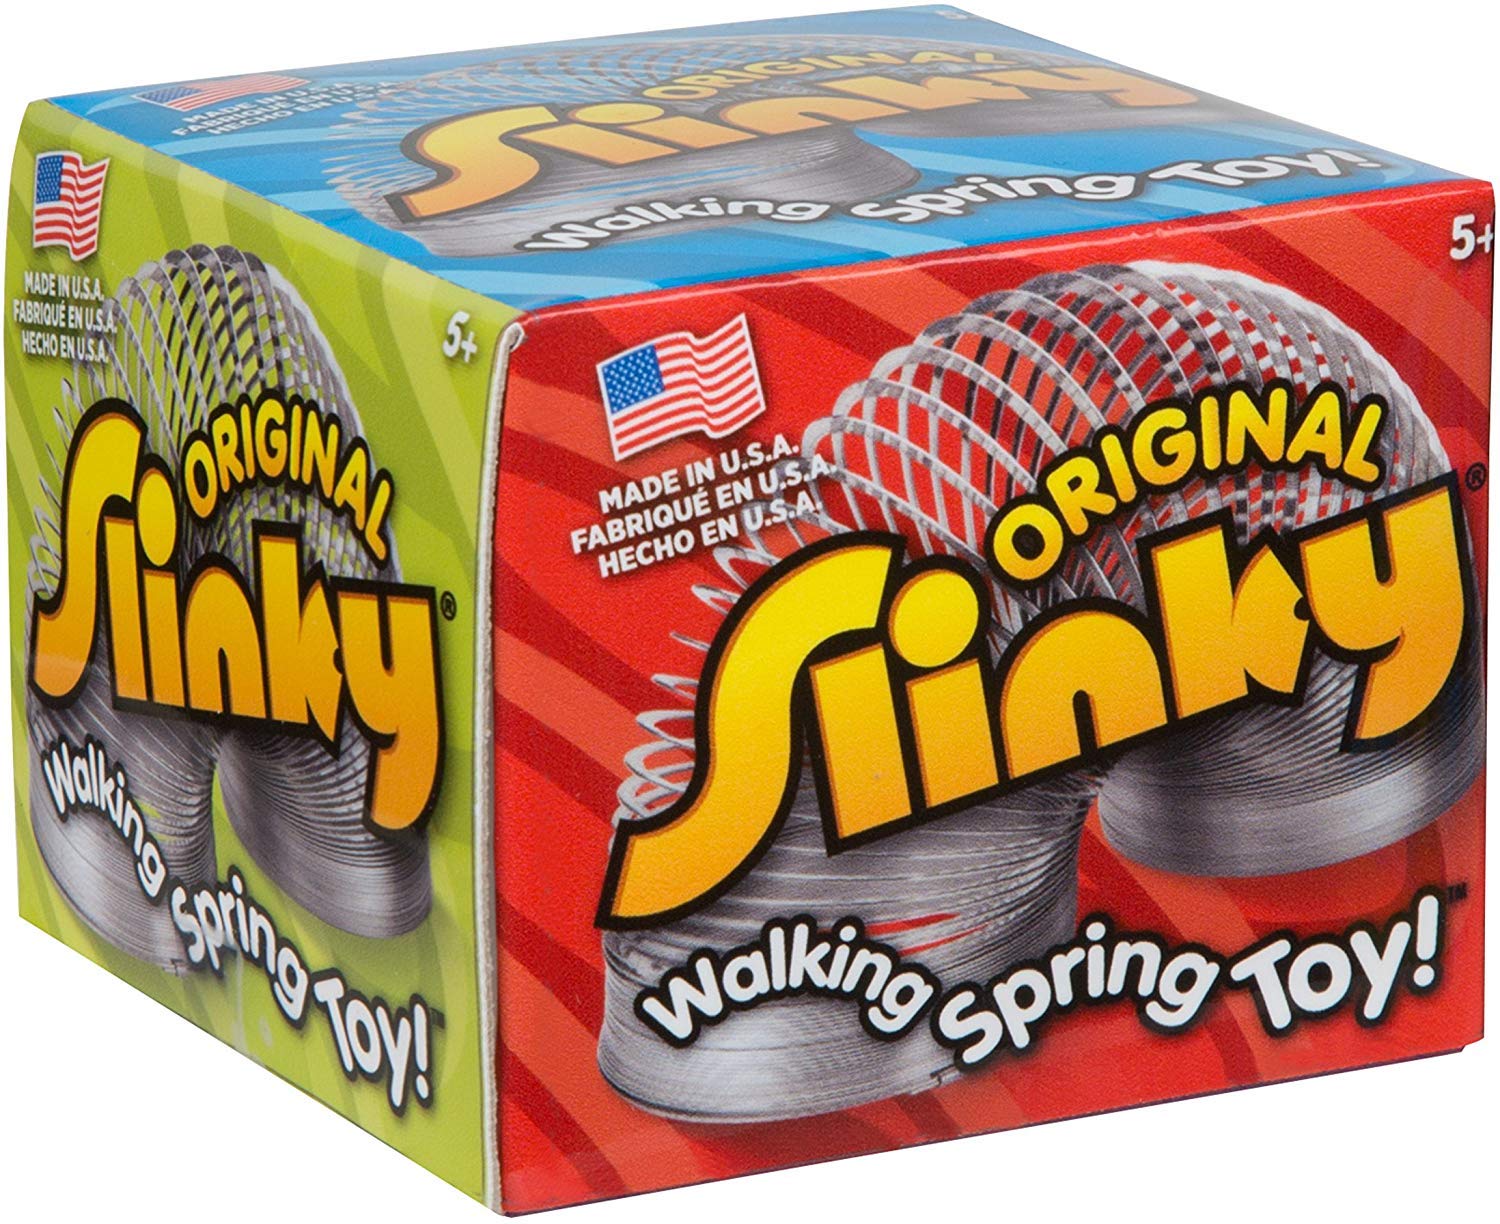 Slinky The Original Brand Kids Spring Toy